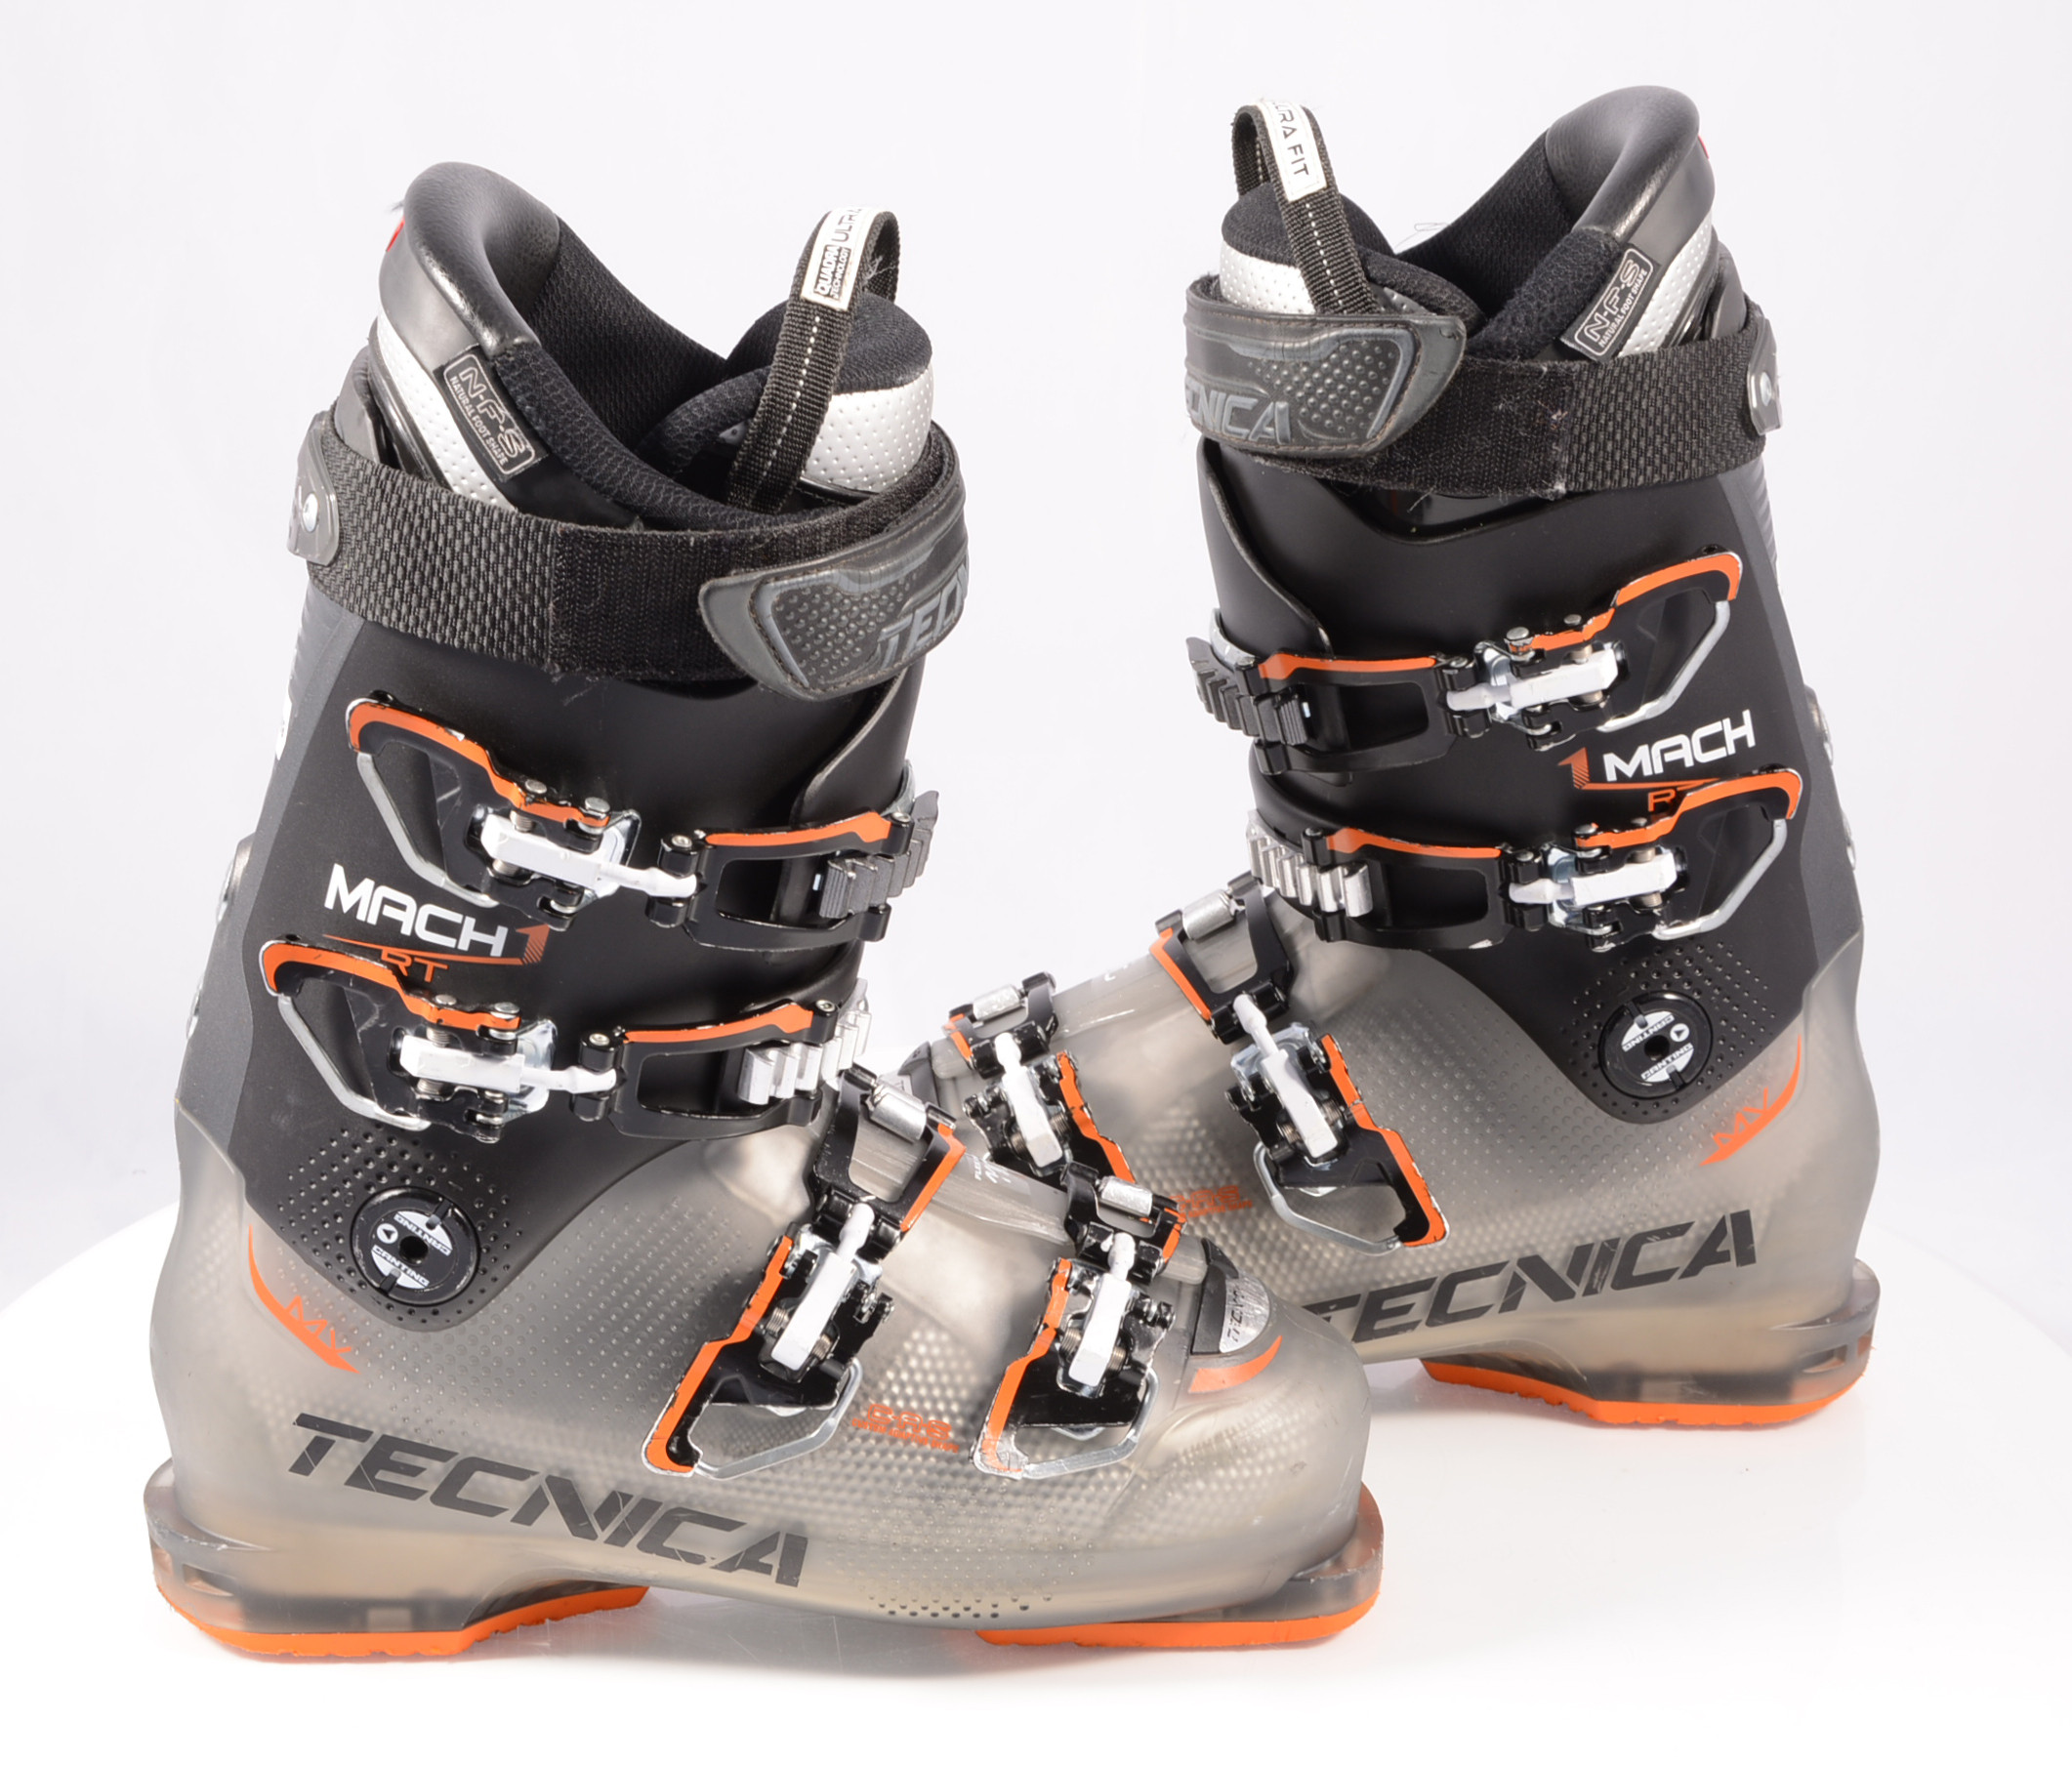 ski boots TECNICA 110 MV 2019, CAS, micro, canting - Mardosport.com